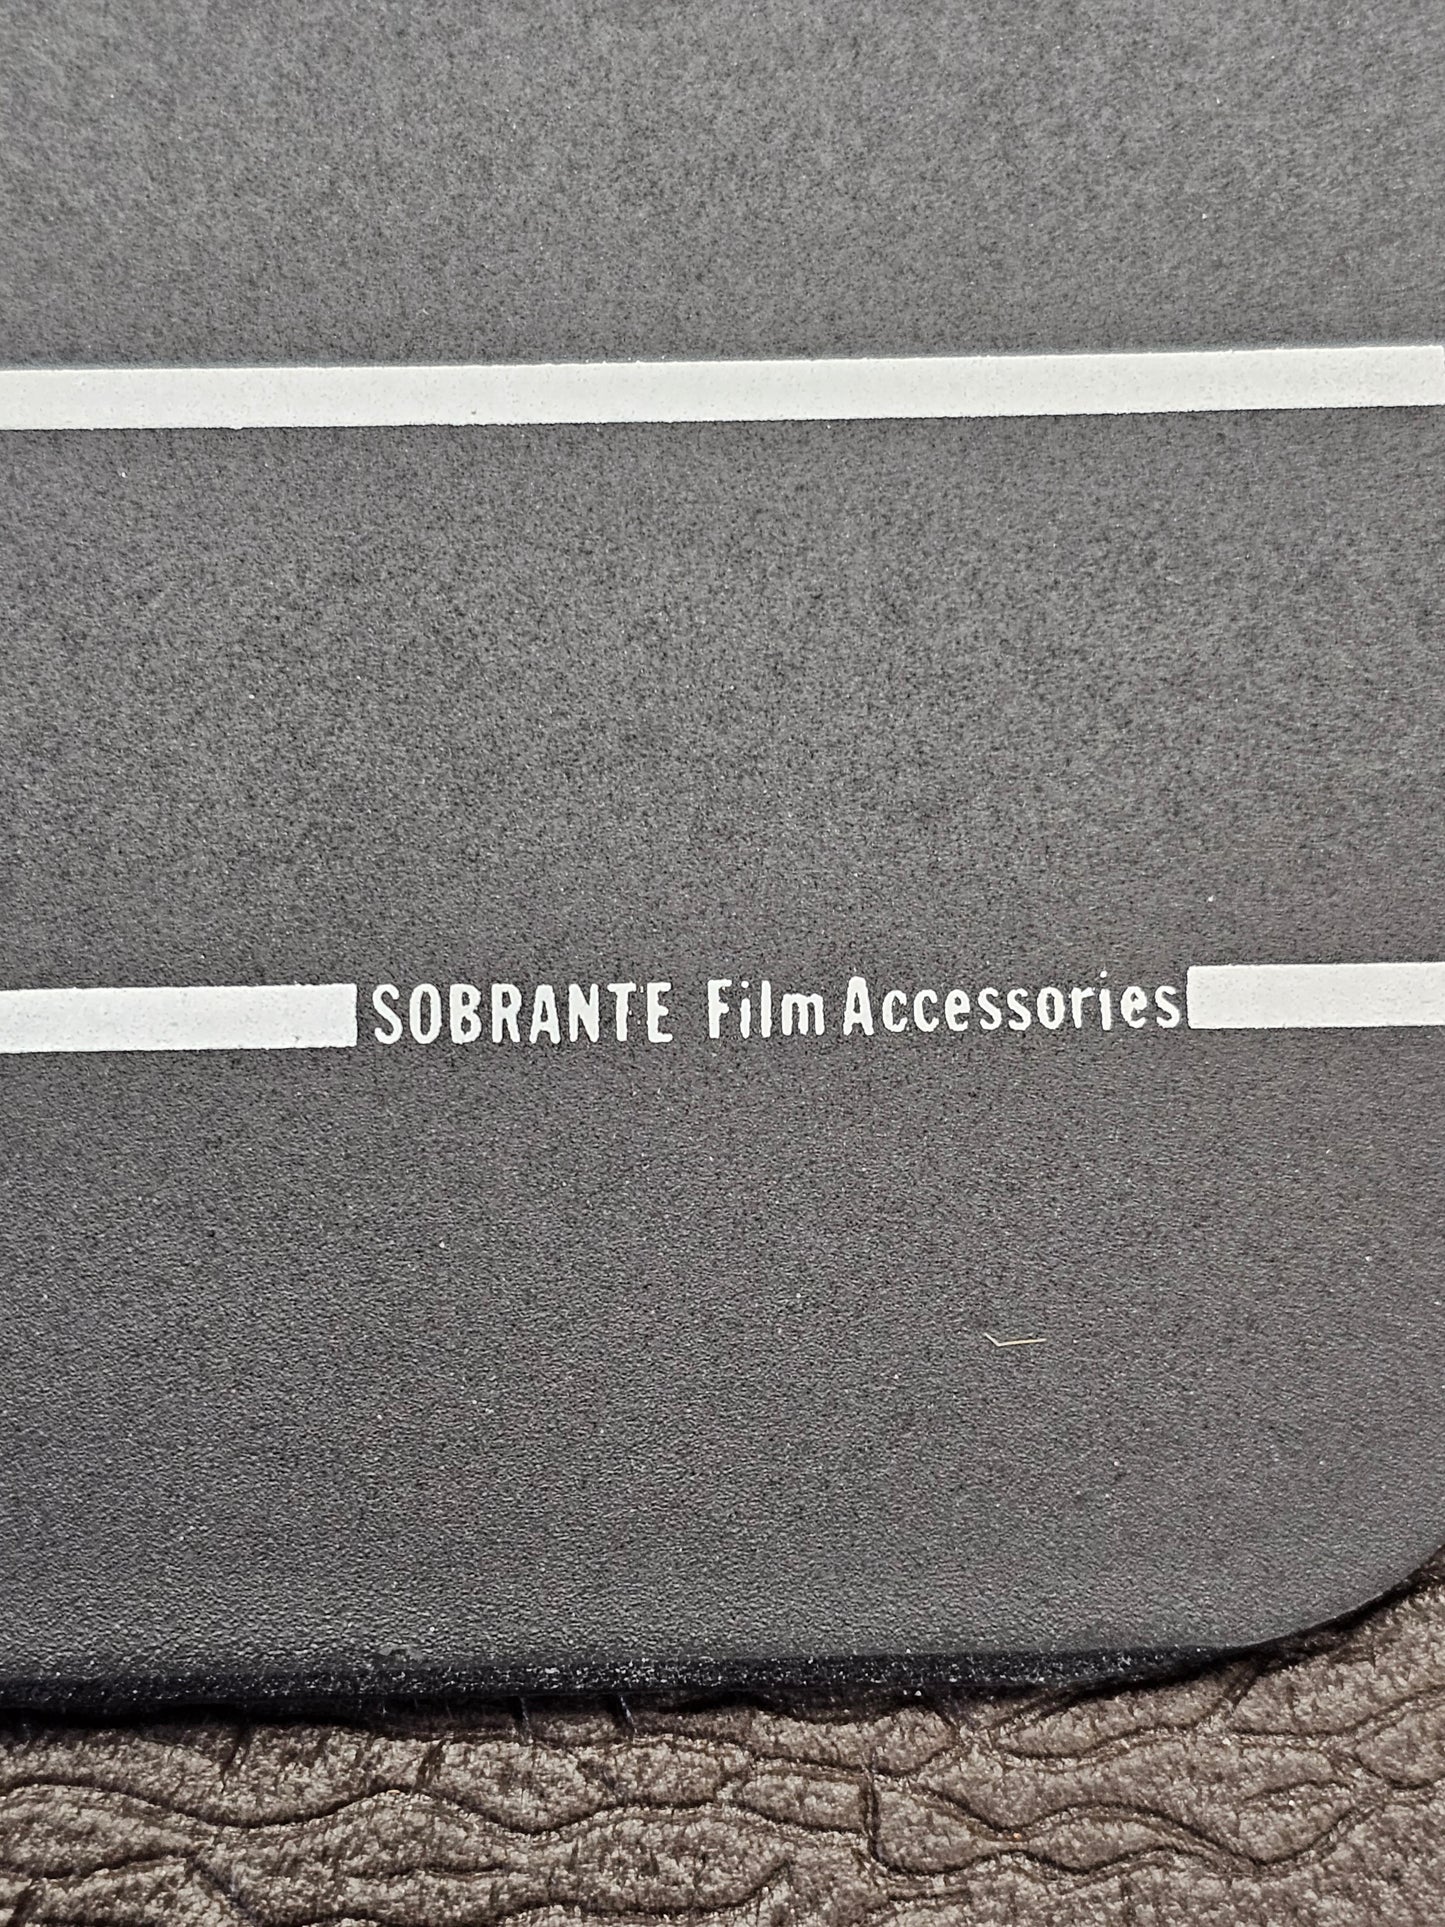 SOBRANTE 9.25" x 11" Standard Chalkboard Slate with B&W Clapper Sticks